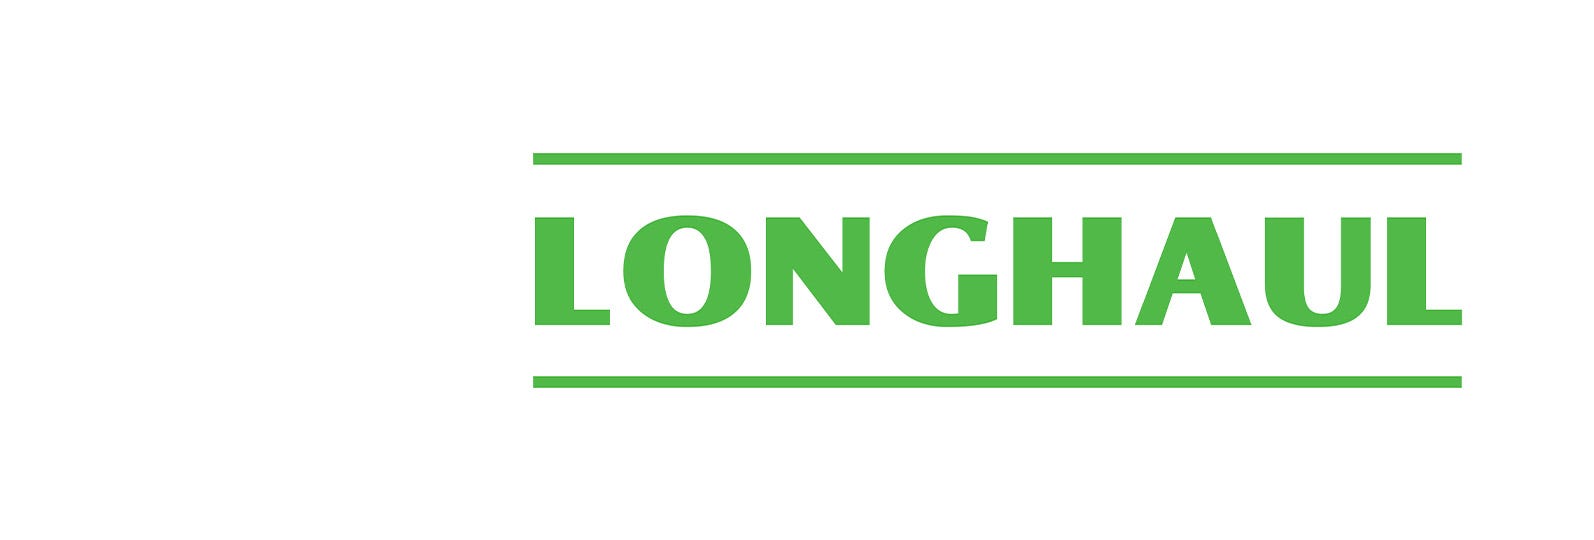 Longhaul